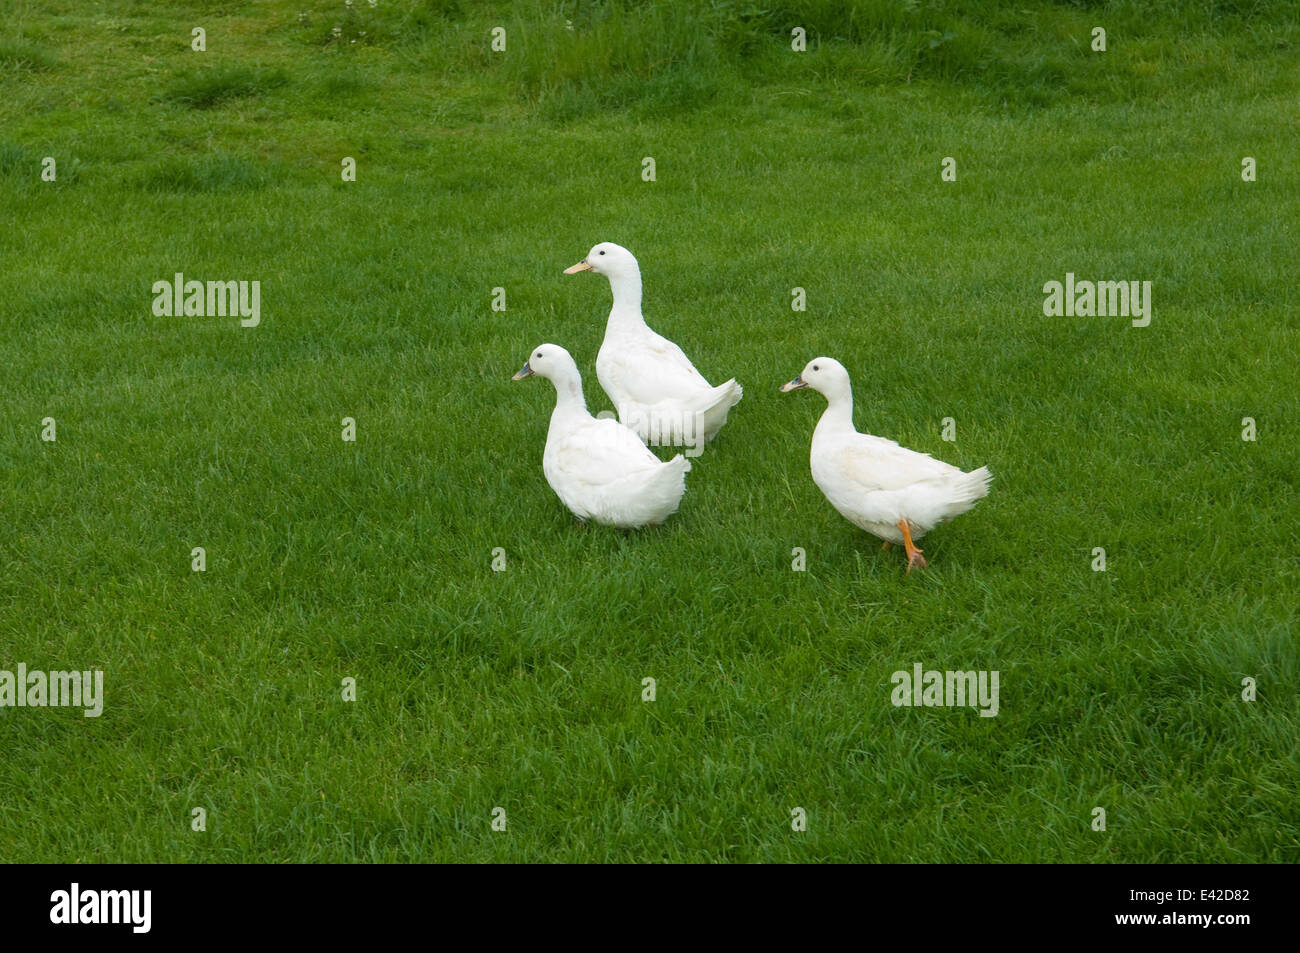 Three ducks on grass Stock Photo